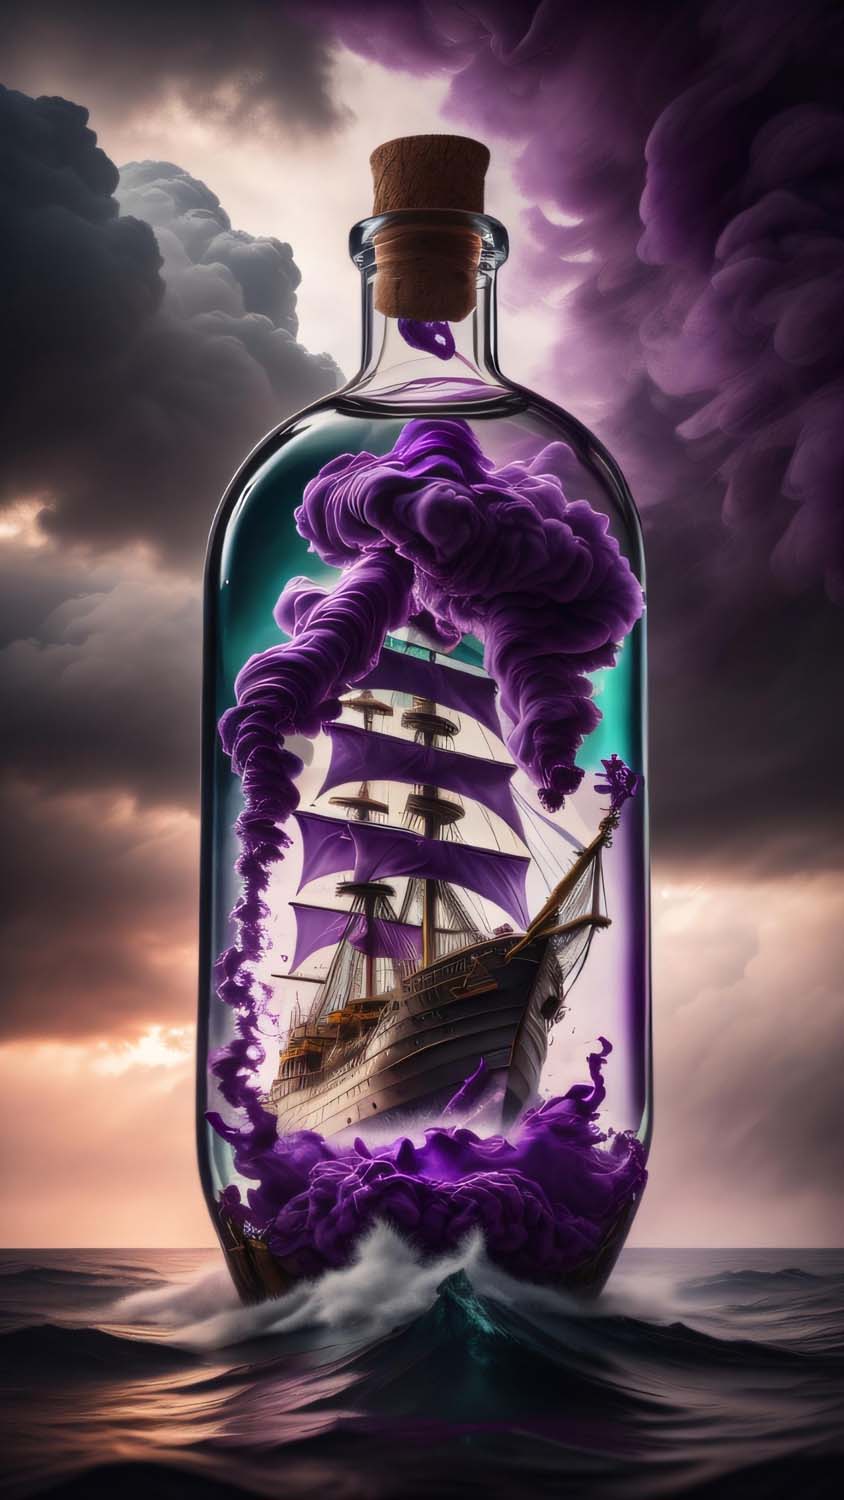 War Ship in Glass Jar iPhone Wallpaper HD